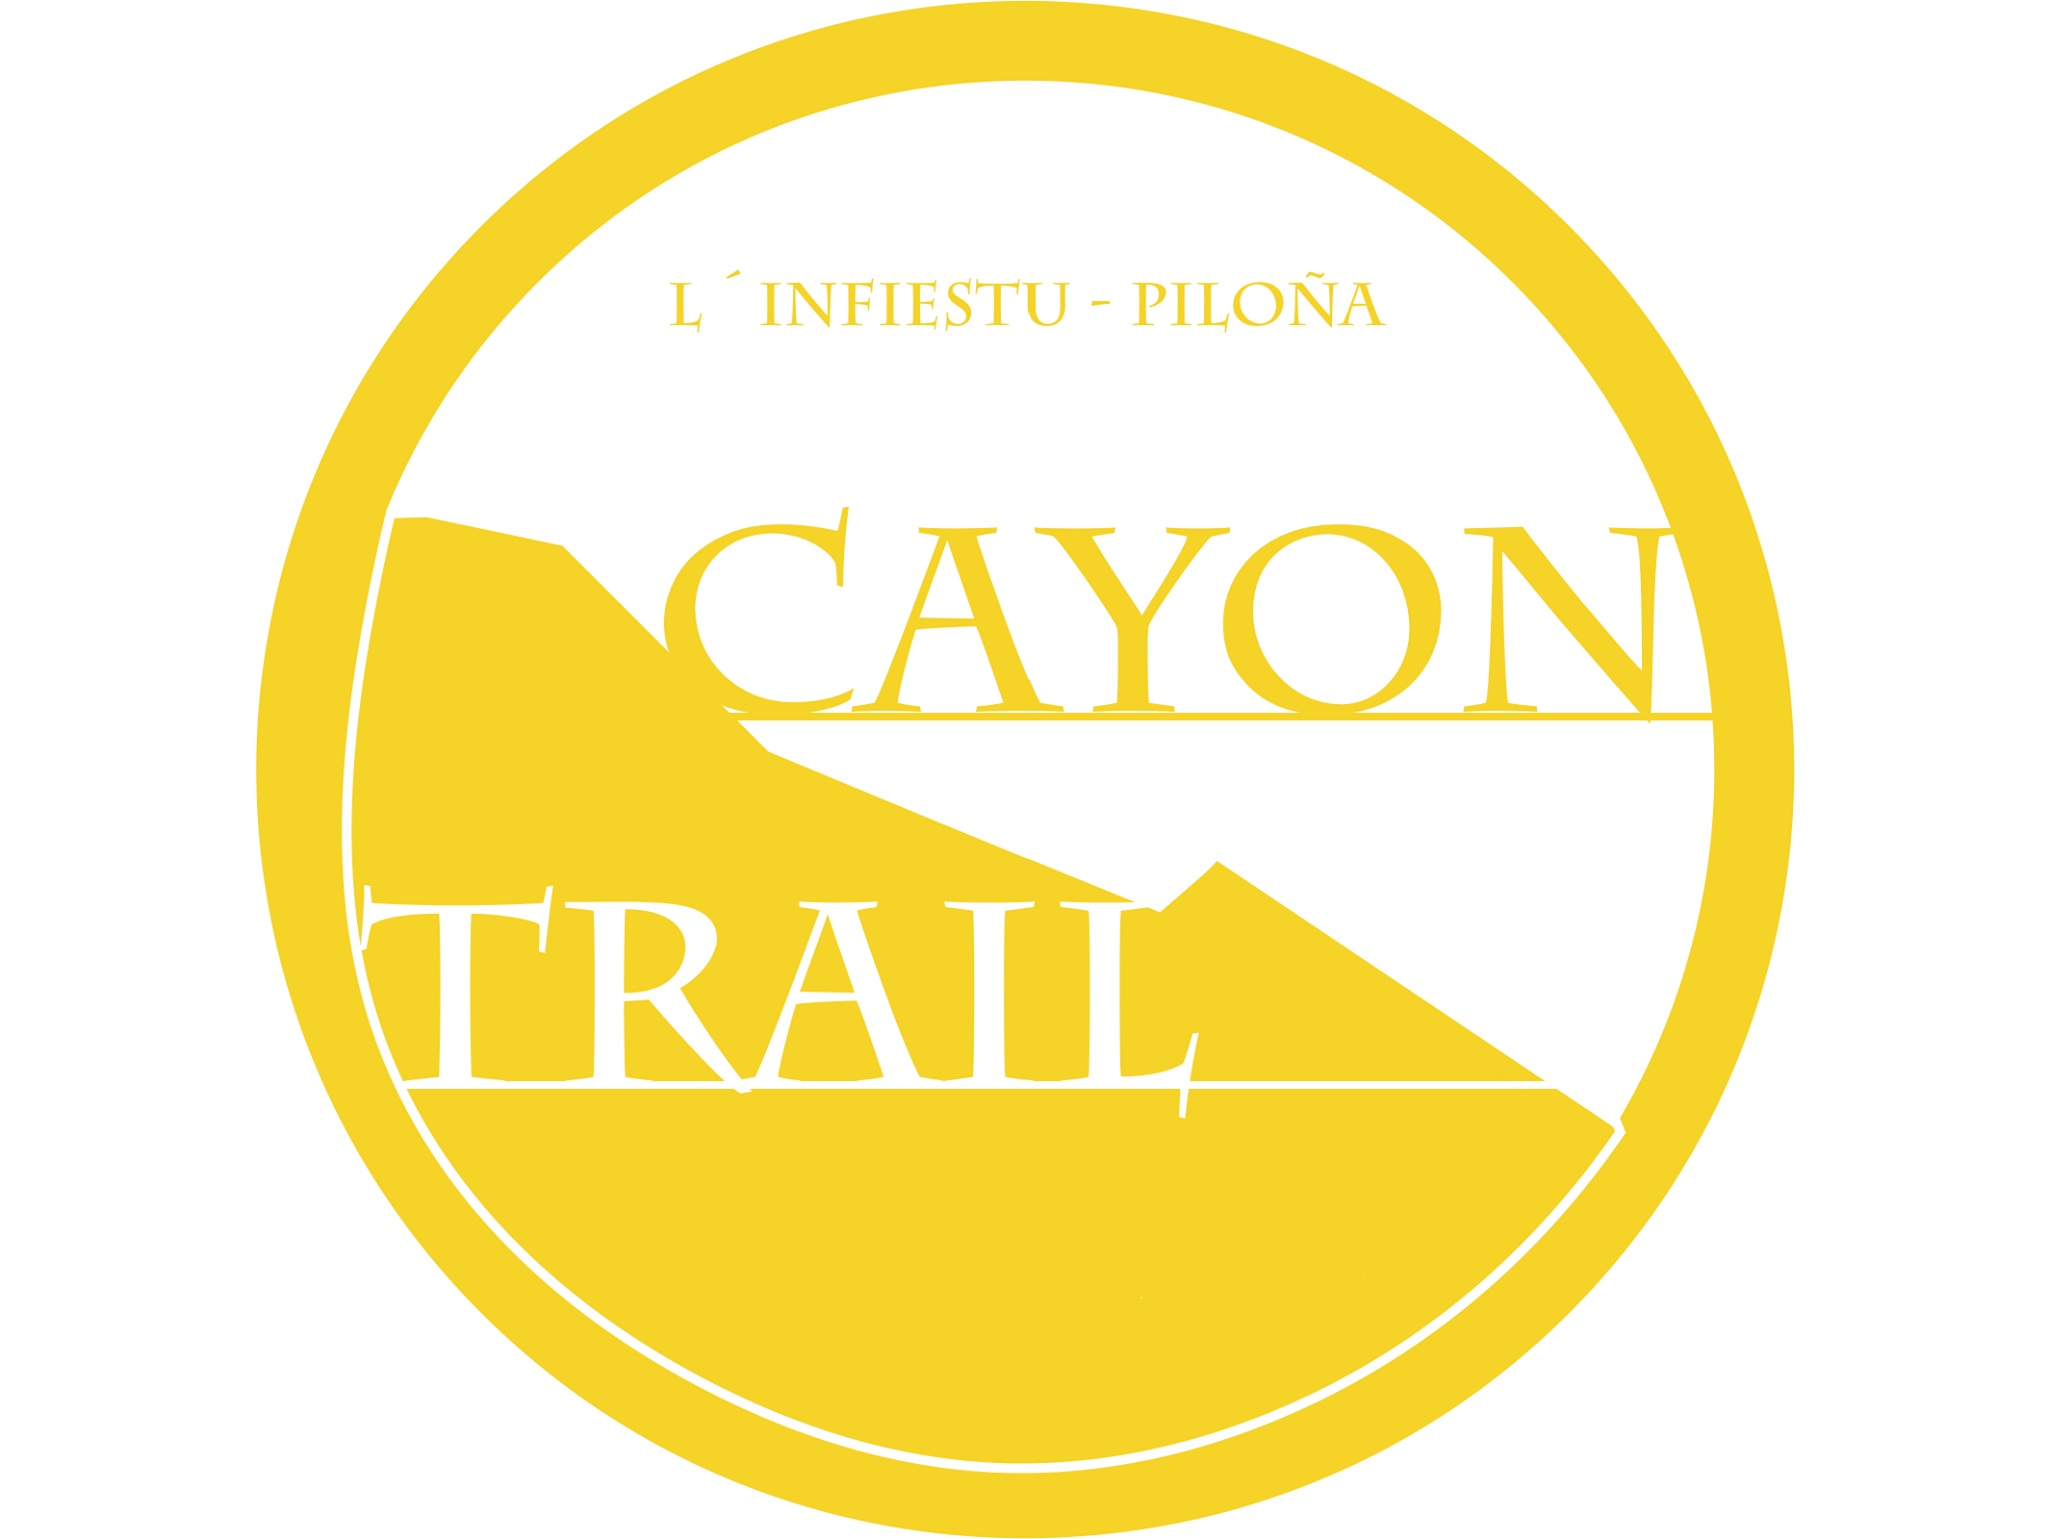 V CAYON TRAIL  - Inscríbete